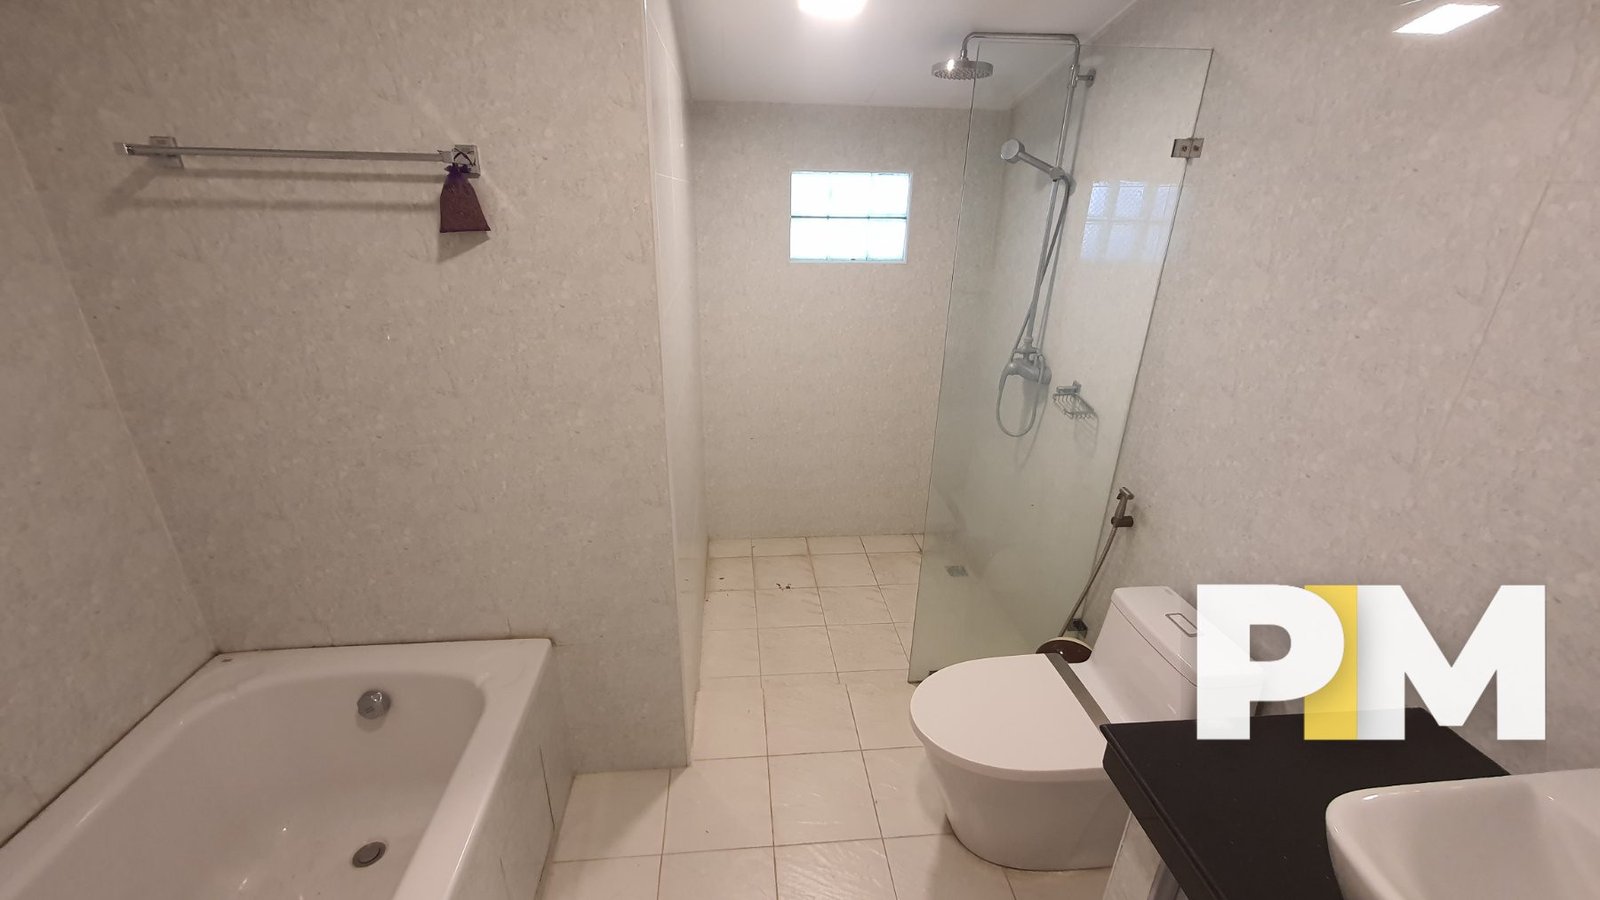 Bathroom with bath tub - Myanmar Real Estate